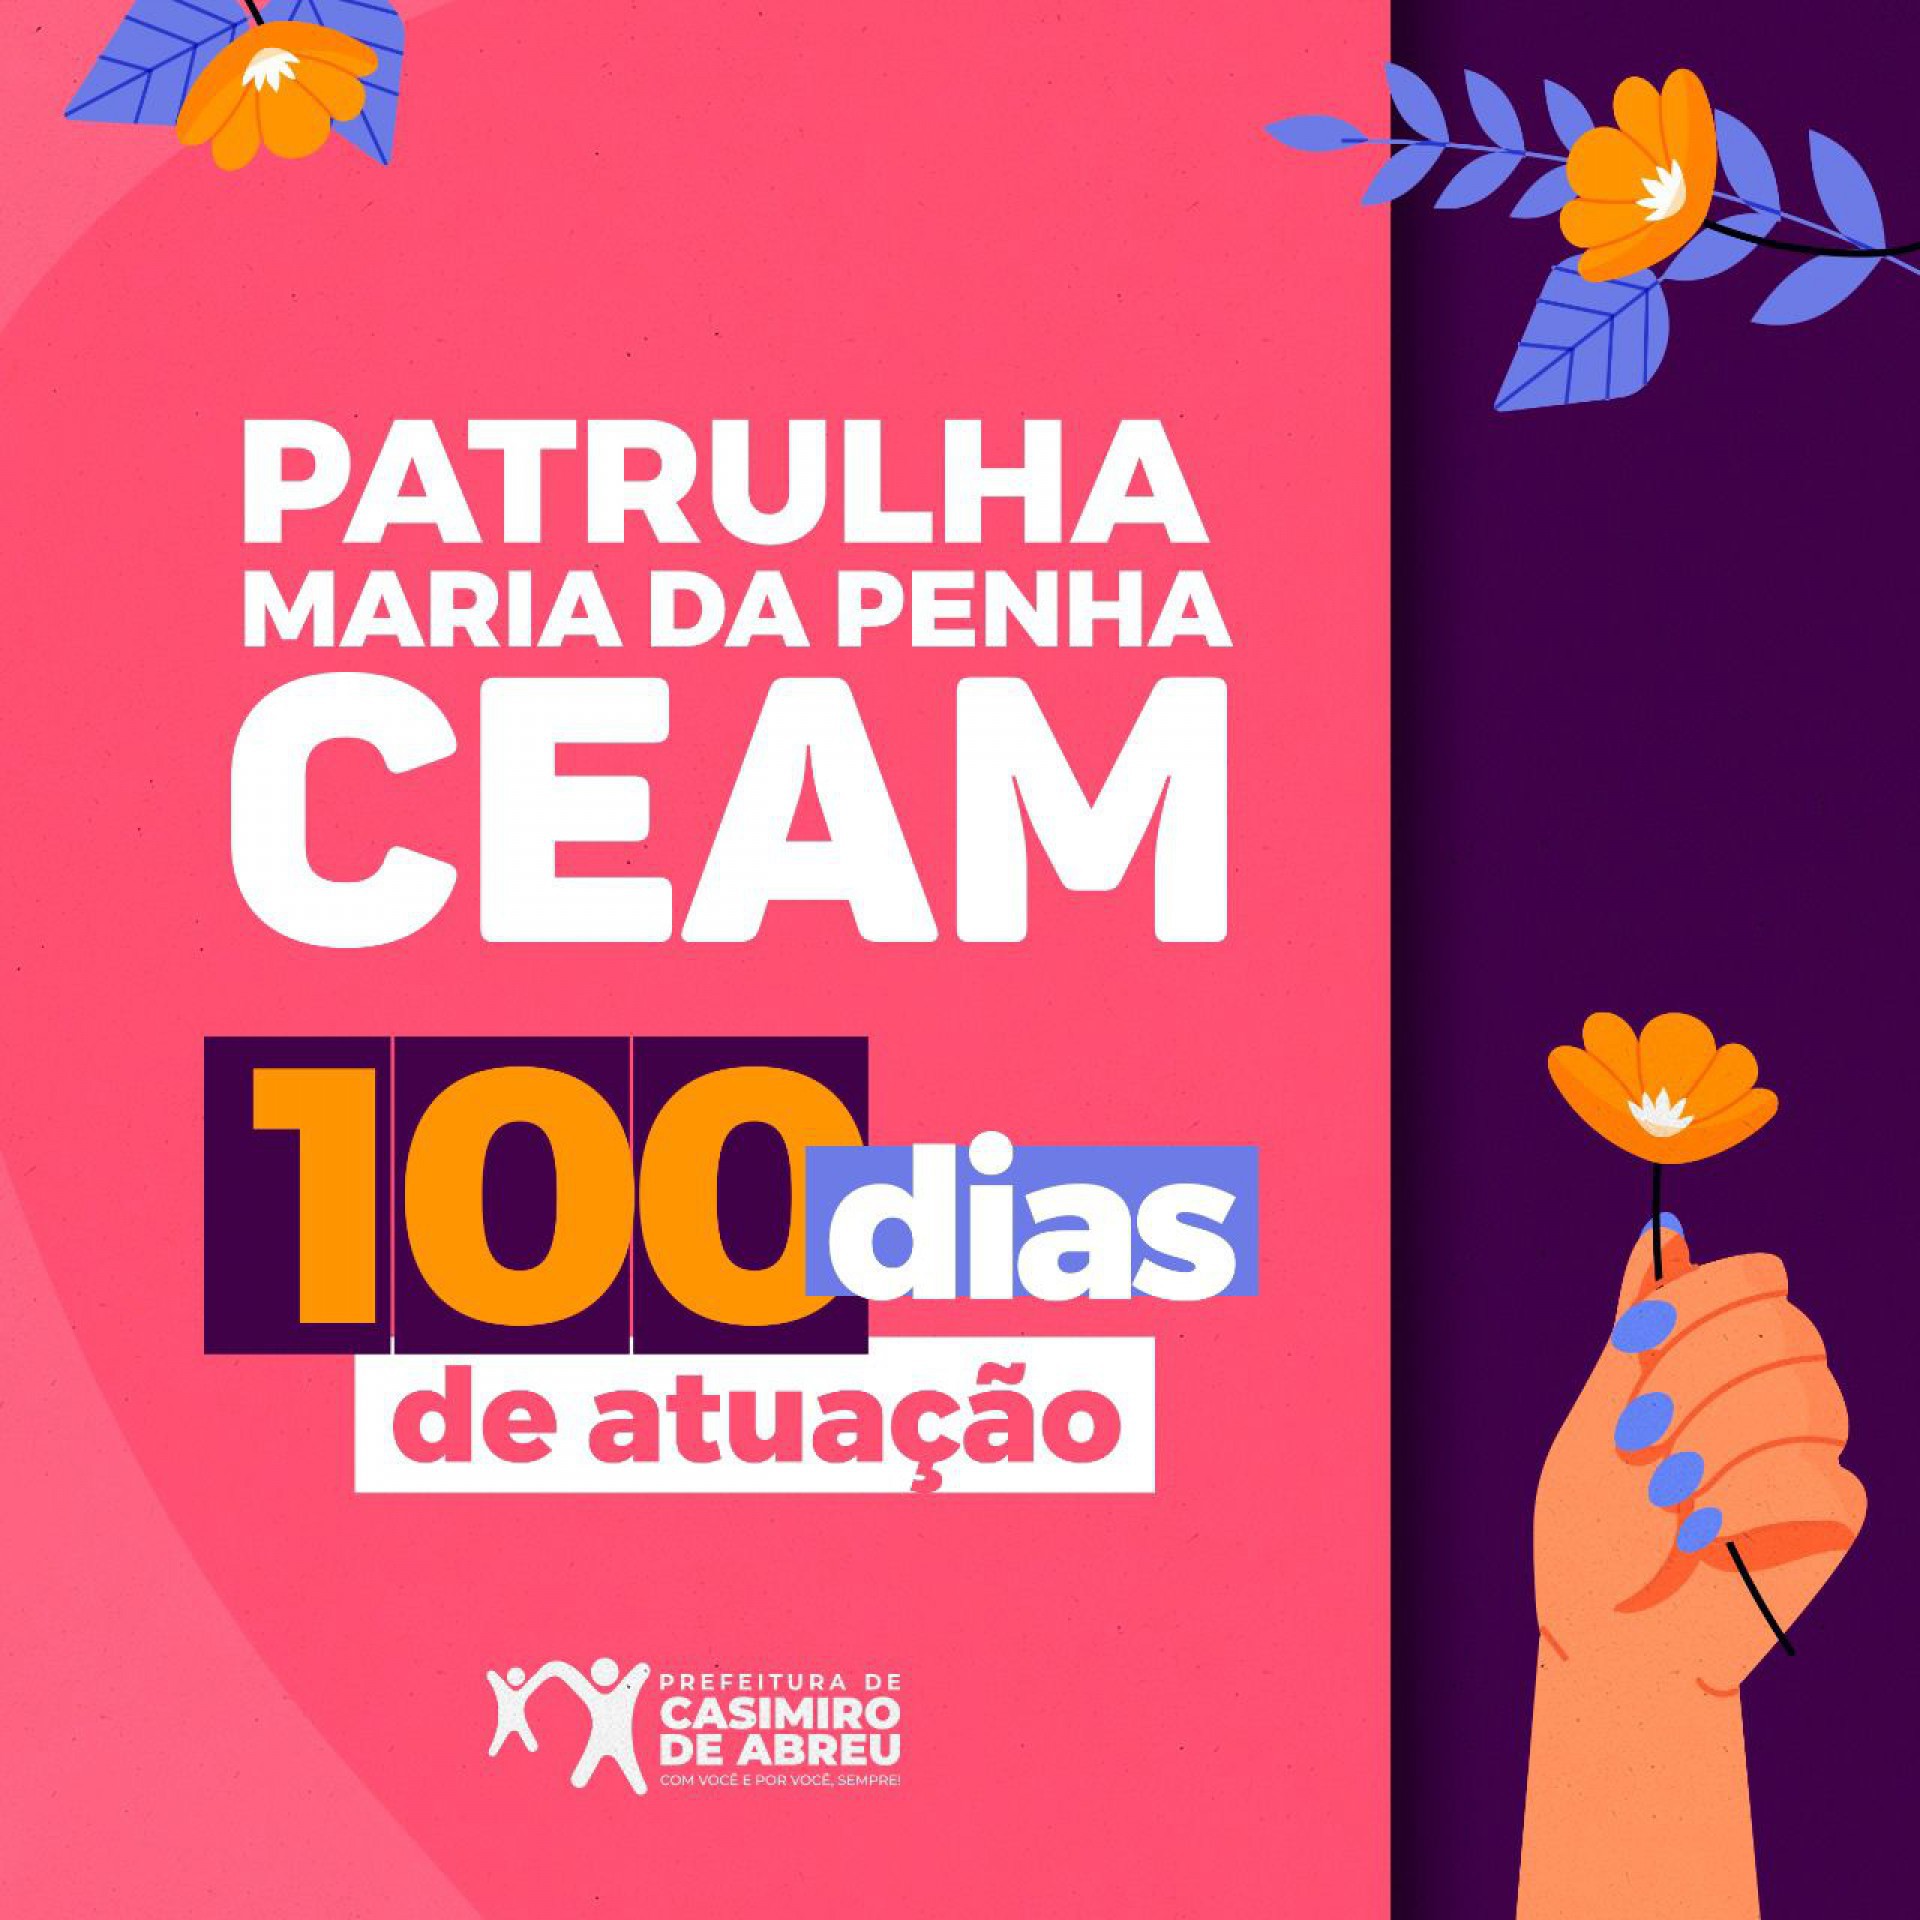 A Patrulha Maria da Penha e o Centro de Atendimento à Mulher, CEAM, foram inaugurados em Casimiro de Abreu no dia 31 de maio - Divulgação